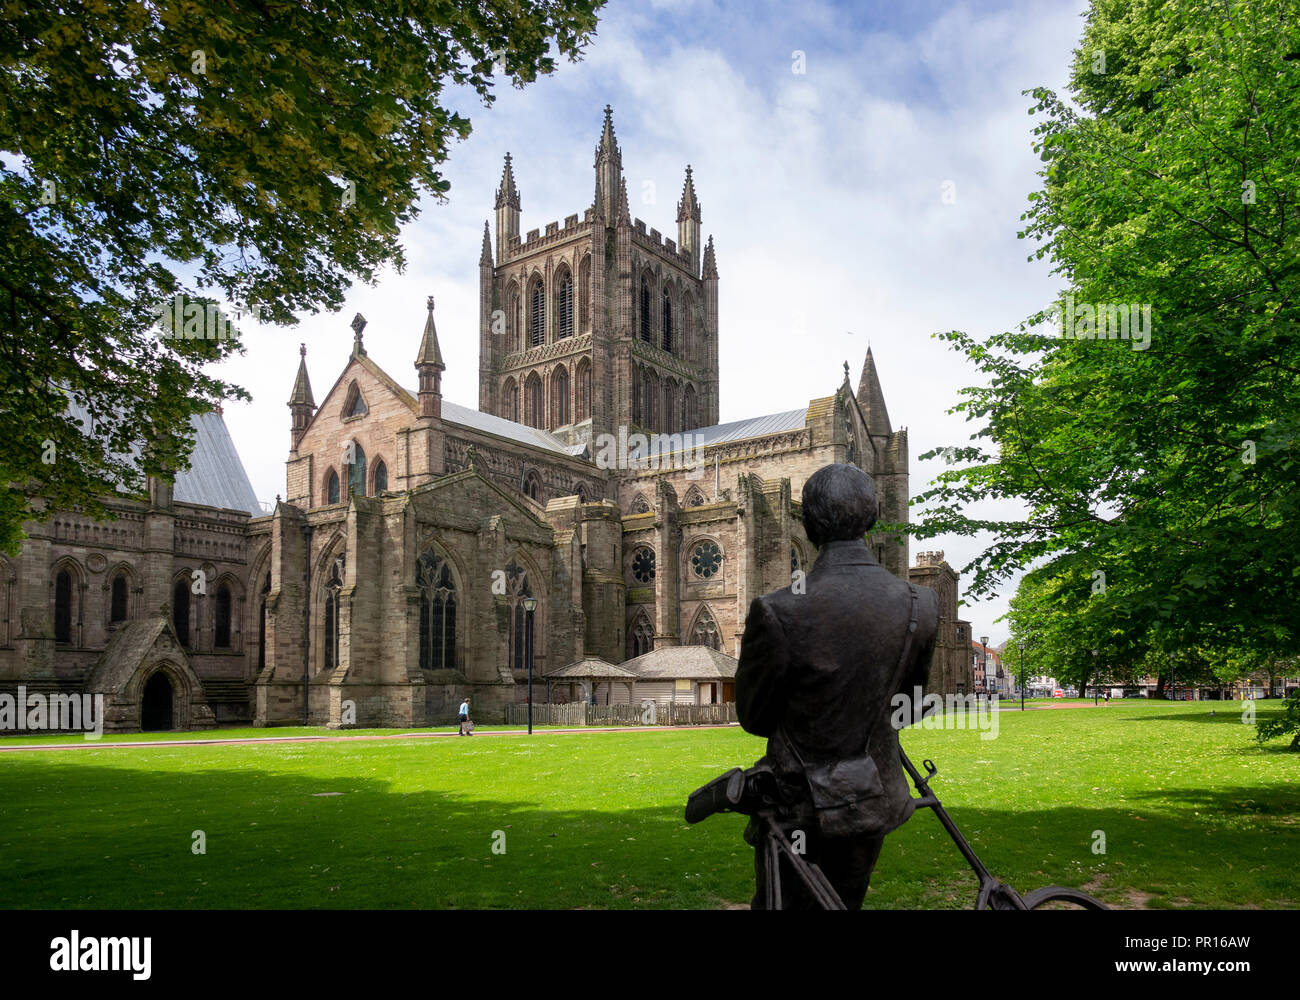 Kathedrale von Norden nach Osten und die Statue von Sir Edward Elgar von Jemma Pearson, Hereford, Herefordshire, England, Vereinigtes Königreich, Europa Stockfoto